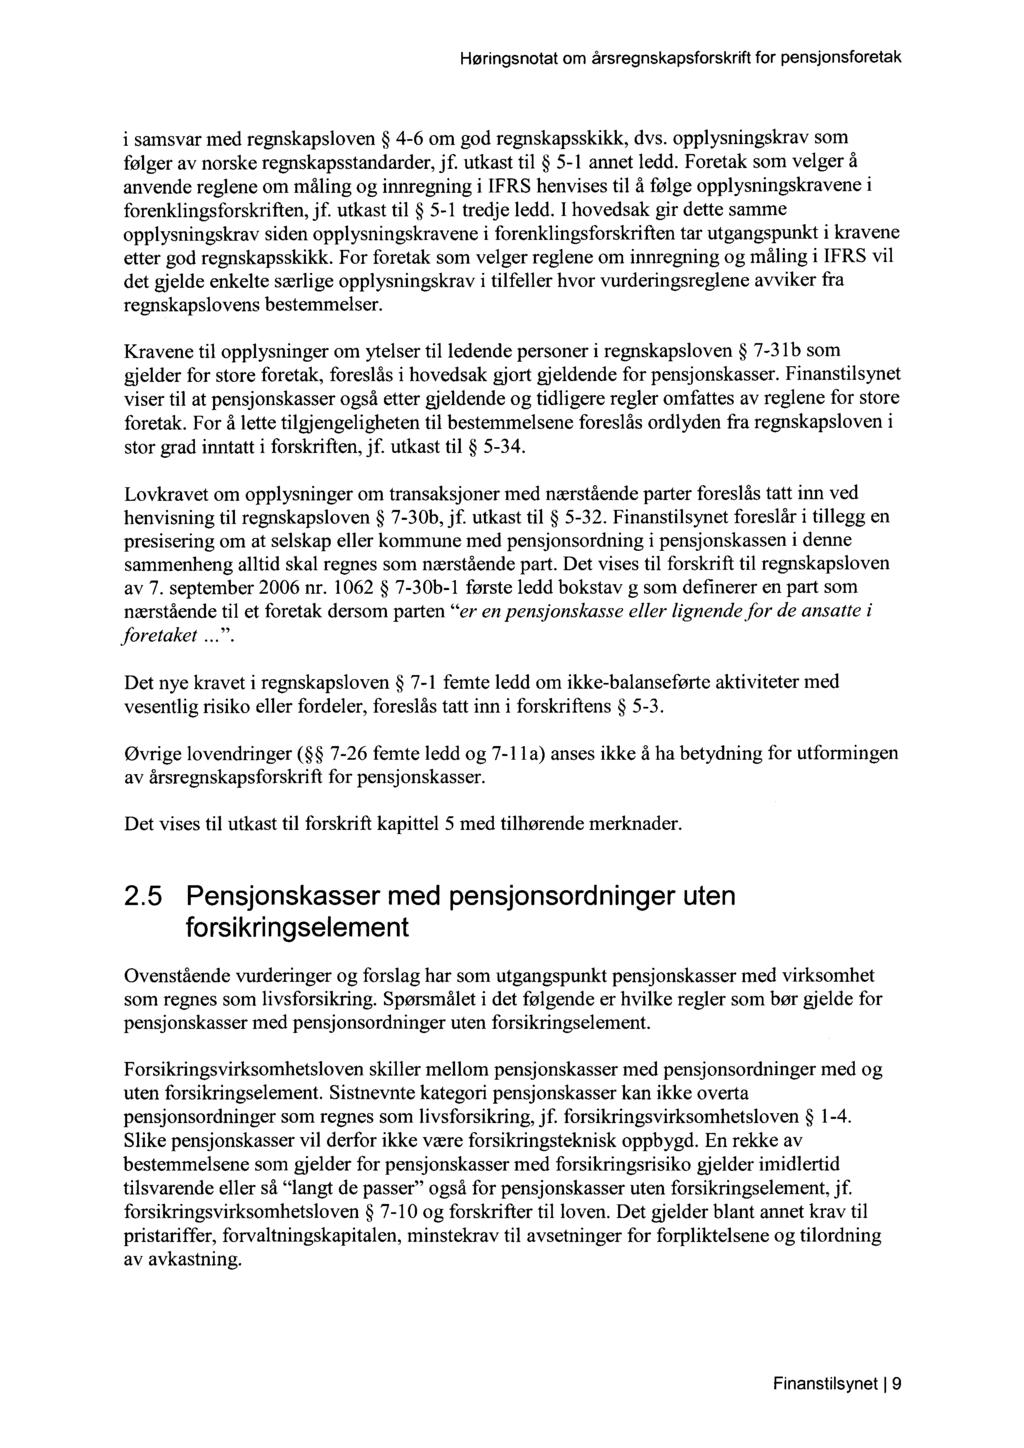 i samsvar med regnskapsloven 4-6 om god regnskapsskikk, dvs. opplysningskrav som følger av norske regnskapsstandarder, jf. utkast til 5-1 annet ledd.